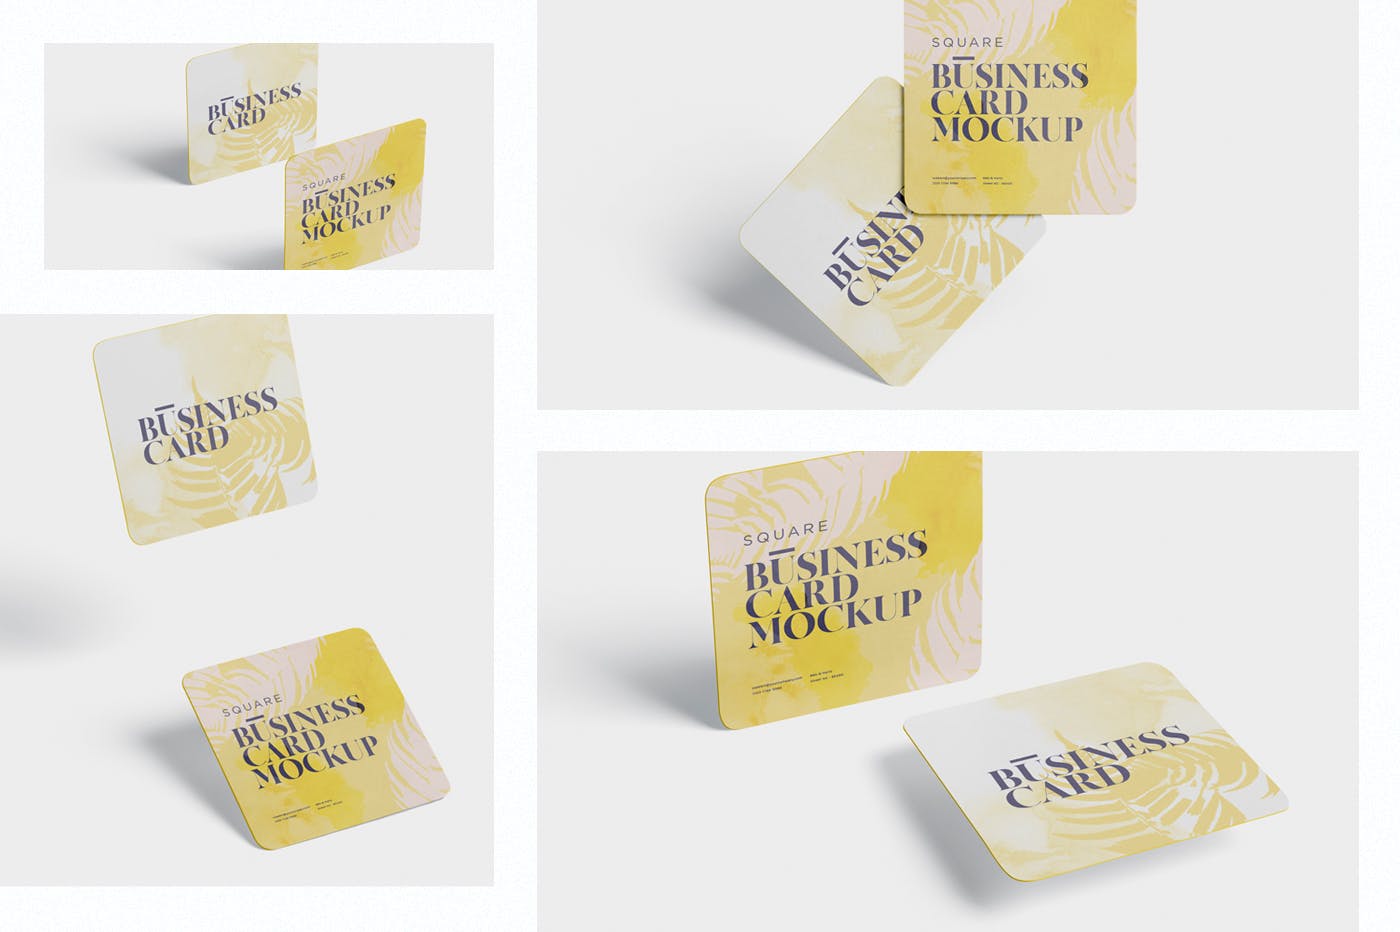 圆角设计风格企业名片效果图素材中国精选 Business Card Mockup – Square Round Corner插图(1)